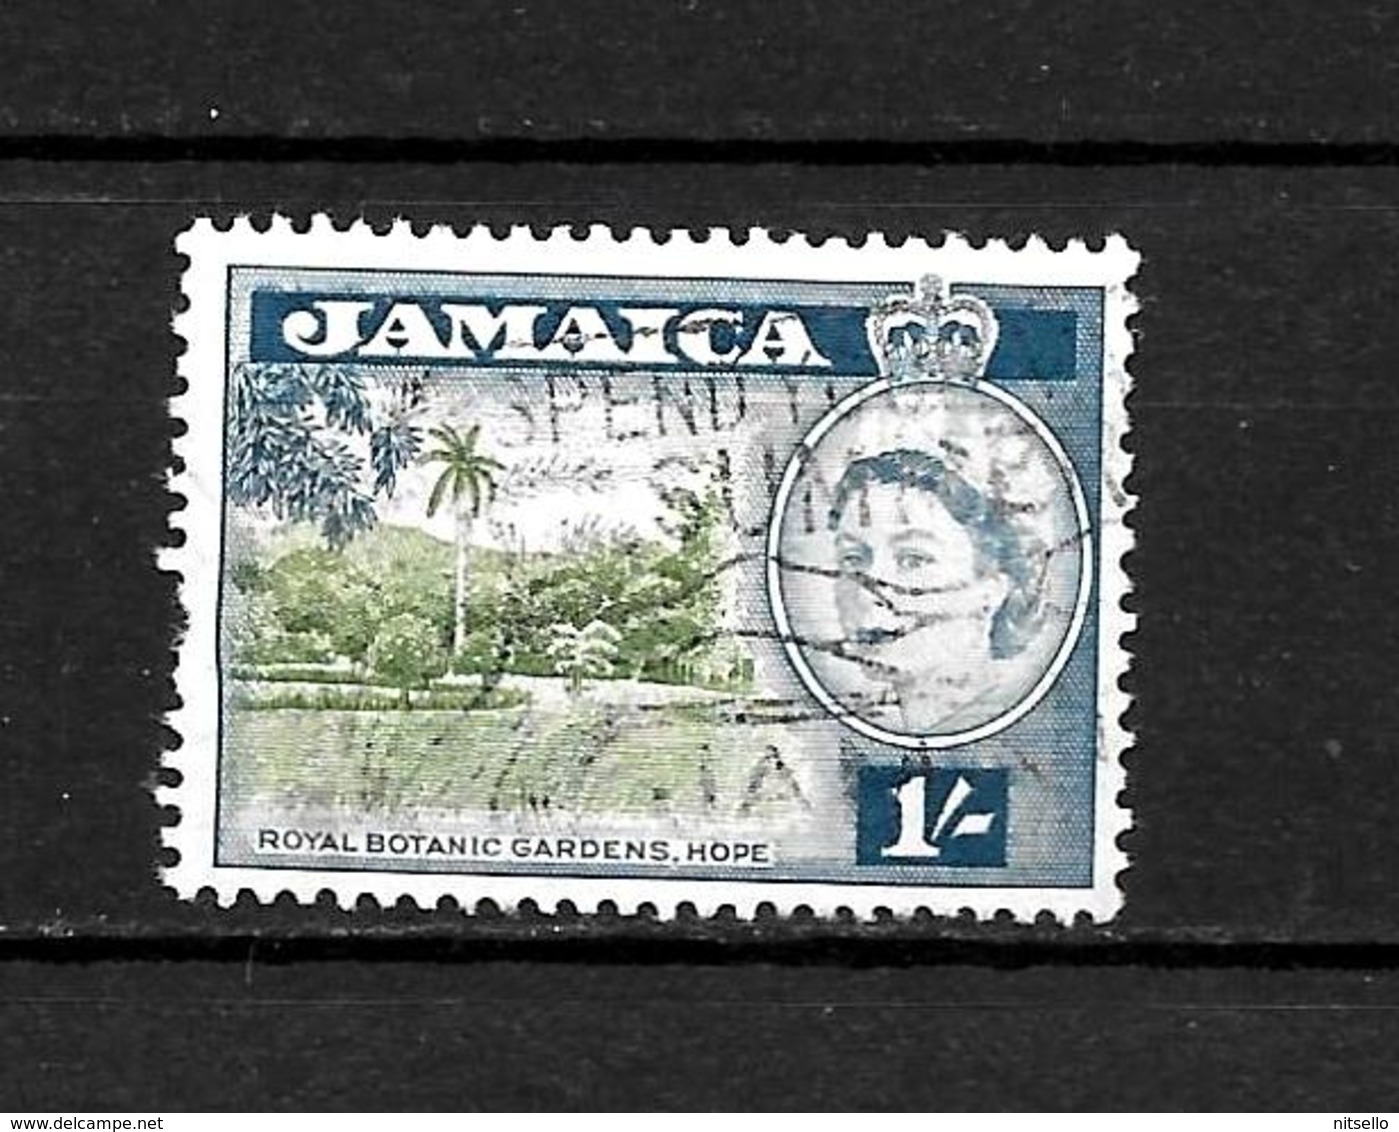 LOTE 1991  ///   COLONIAS INGLESAS - JAMAICA    ¡¡¡ OFERTA - LIQUIDATION !!! JE LIQUIDE !!! - Jamaica (...-1961)